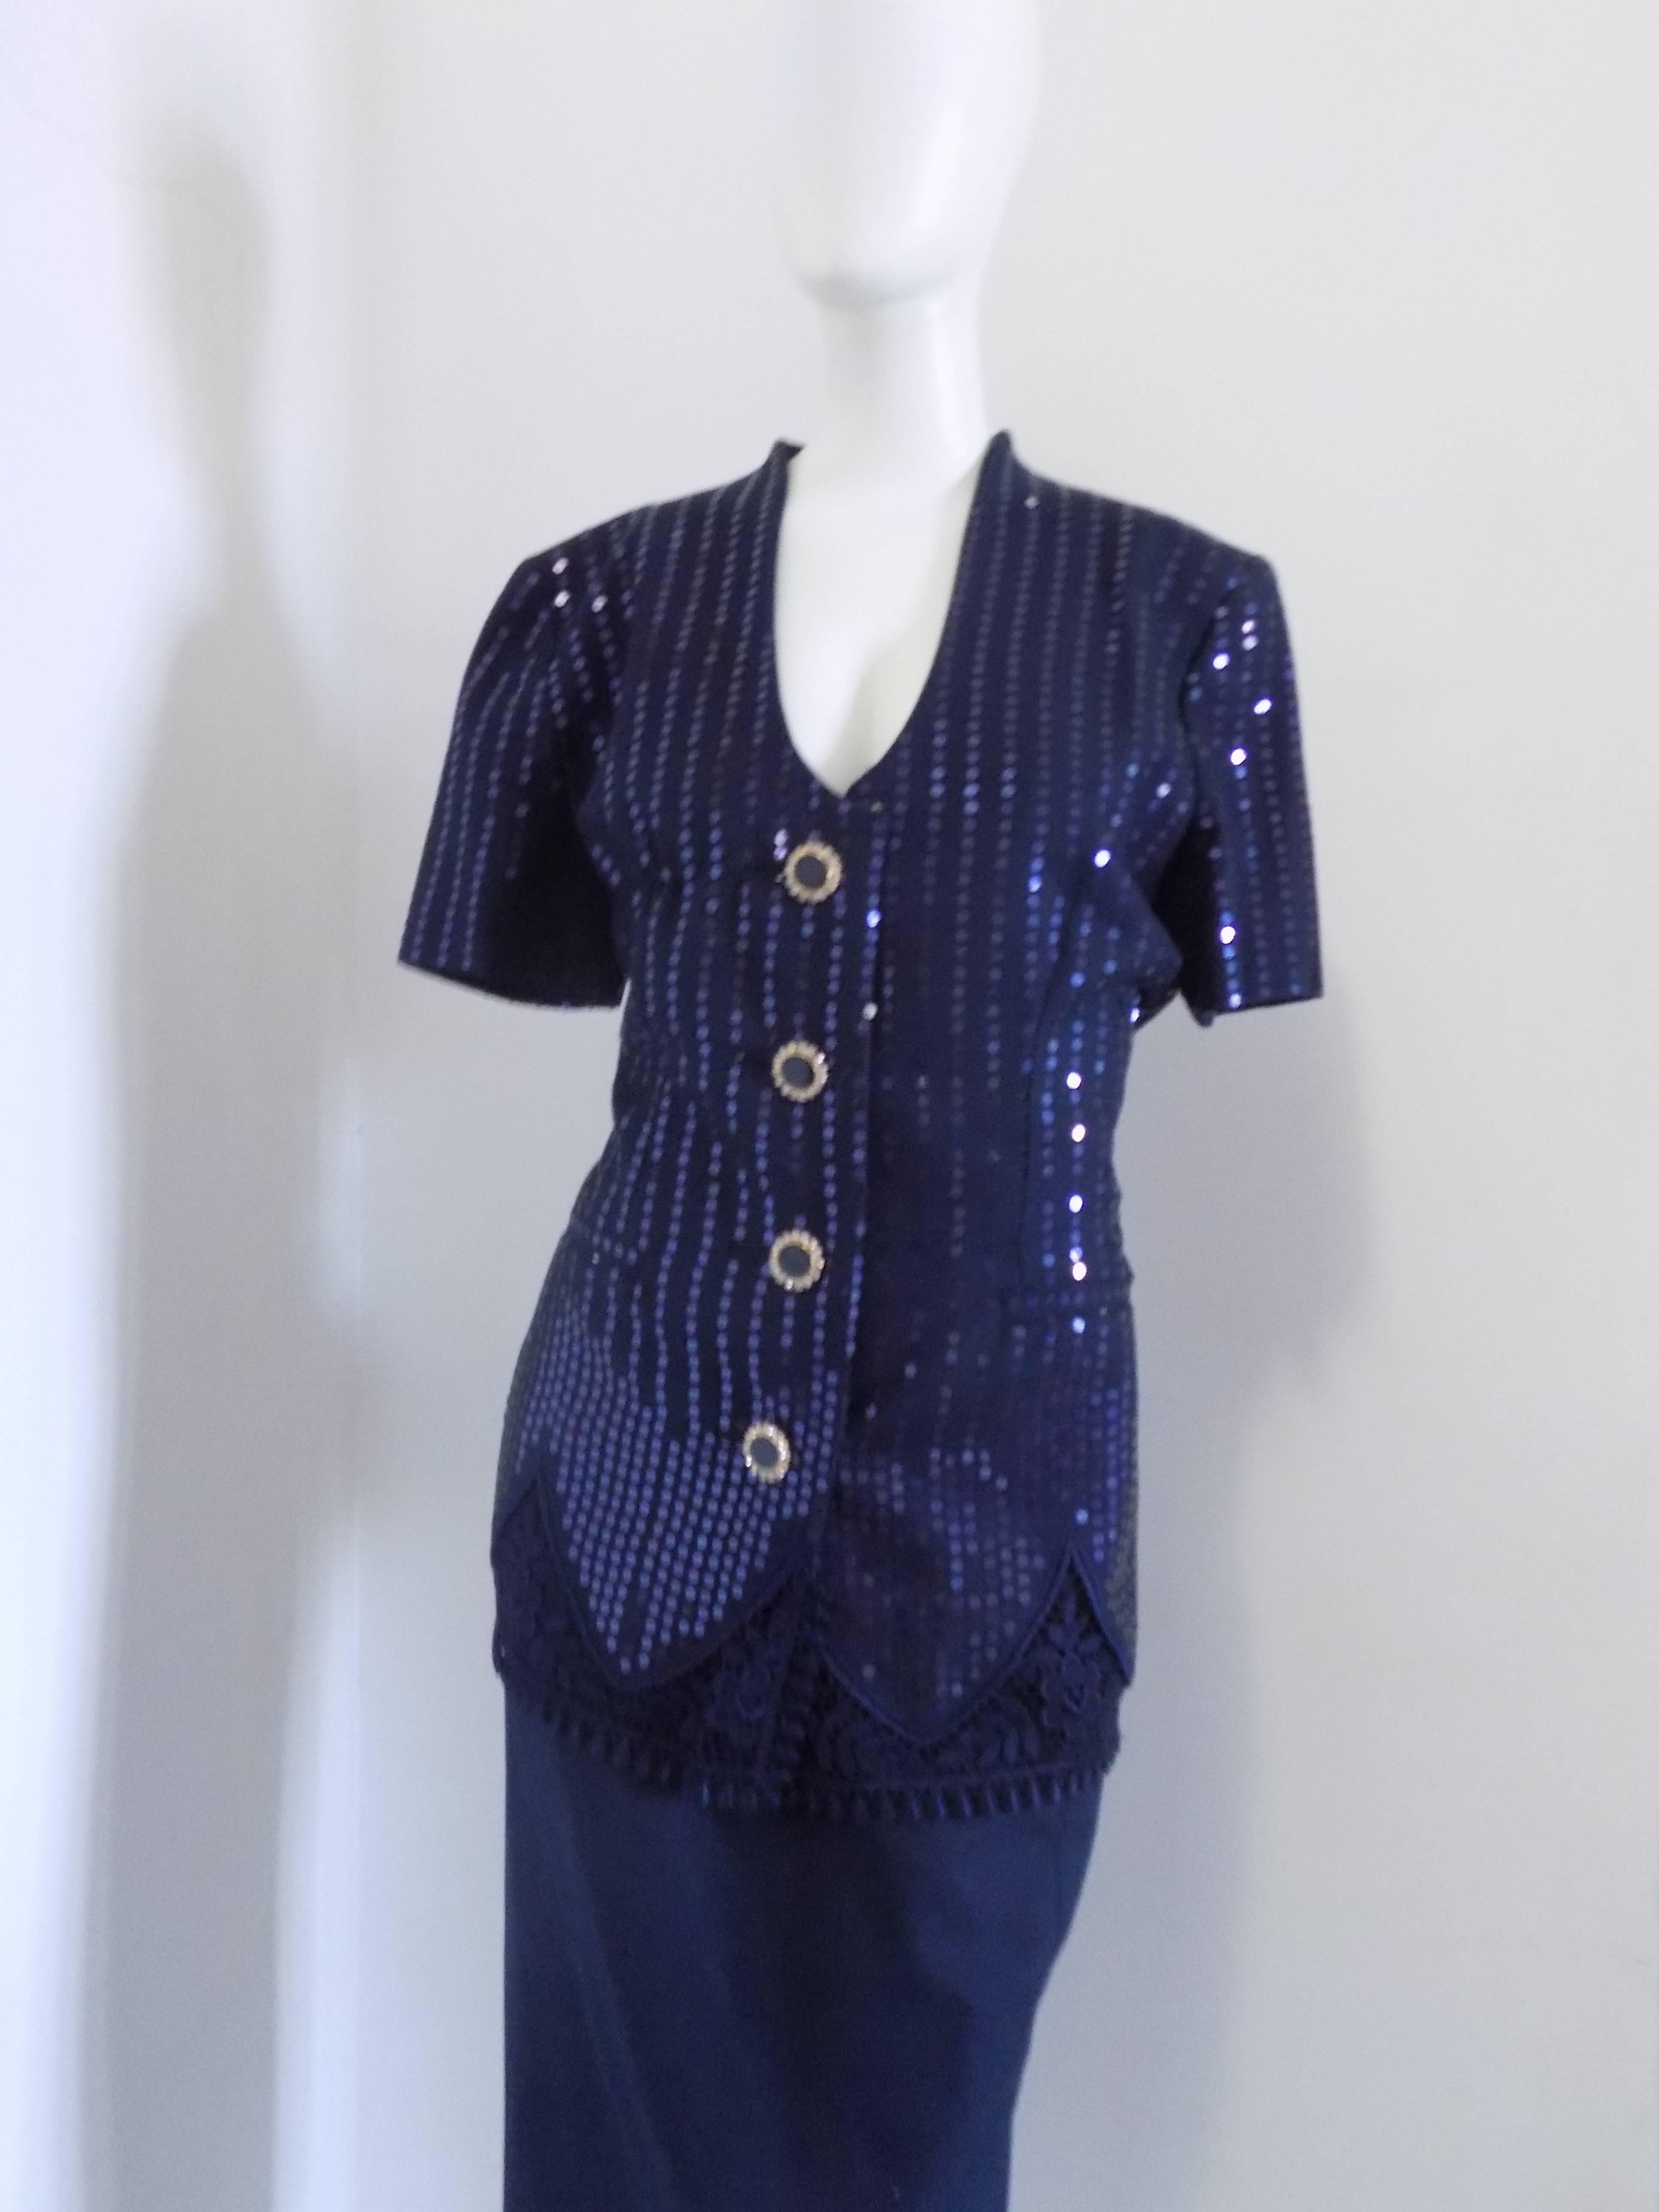 costume à paillettes Blu Couture des années 1990 de Gai Mattiolo  Tailleur

Bottines avec ornements

Totalement fabriqué en Italie dans une gamme de taille 44

Composition : 100 % coton

Mesures de la veste : de l'épaule à l'ourlet 24 cm,